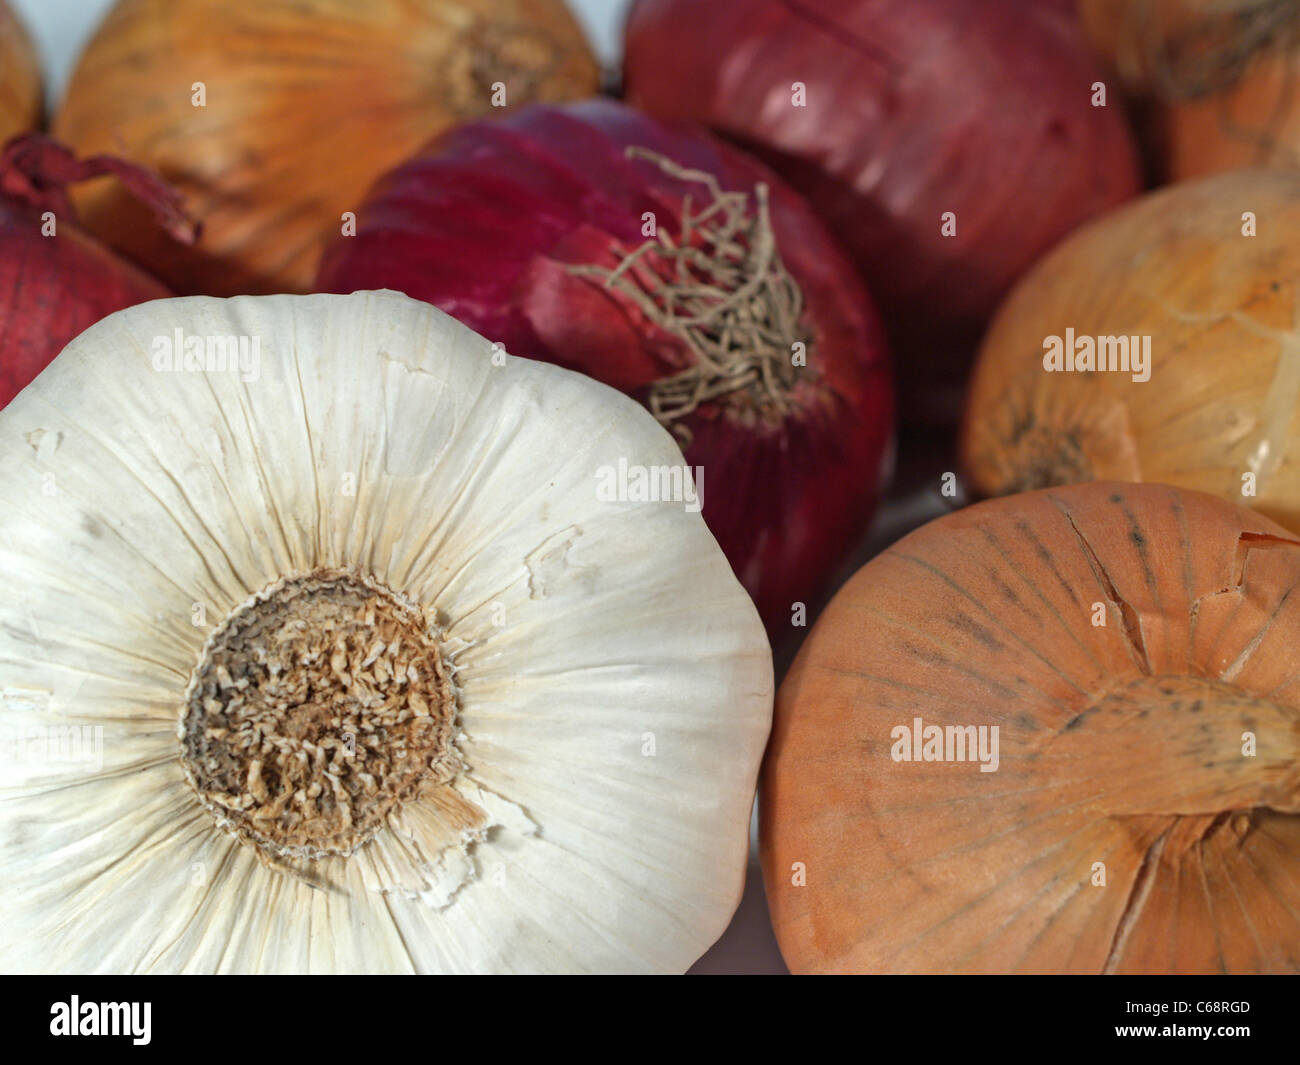 Zwiebeln und Knoblauch liegen nebeneinander | Onions and garlic are next to each other Stock Photo